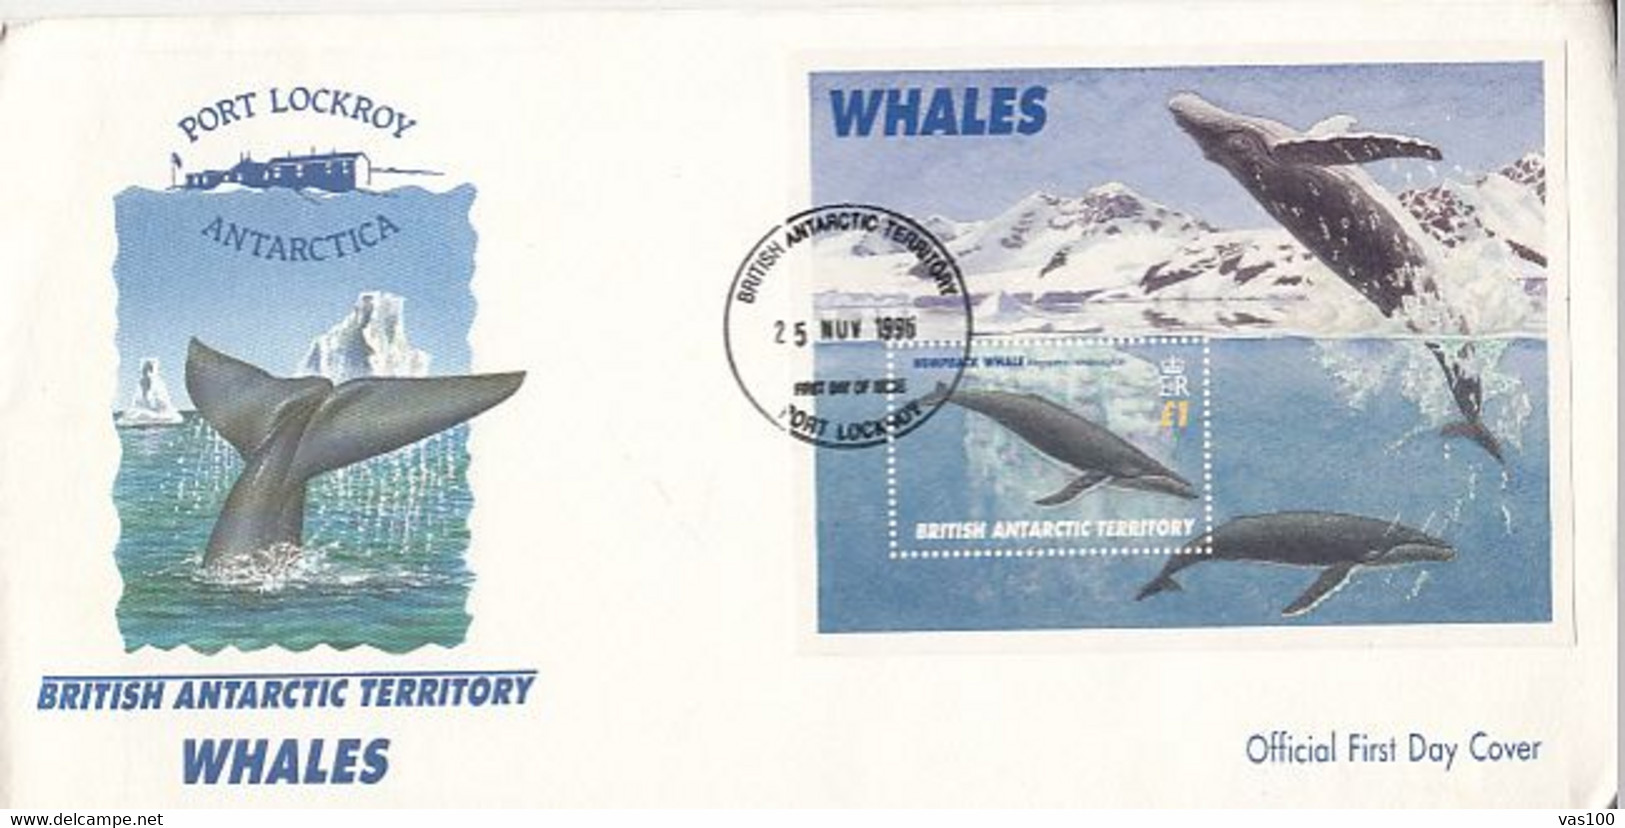 SOUTH POLE, ANTARCTIC WILDLIFE, WHALES, COVER FDC, 1996, UK - Antarktischen Tierwelt